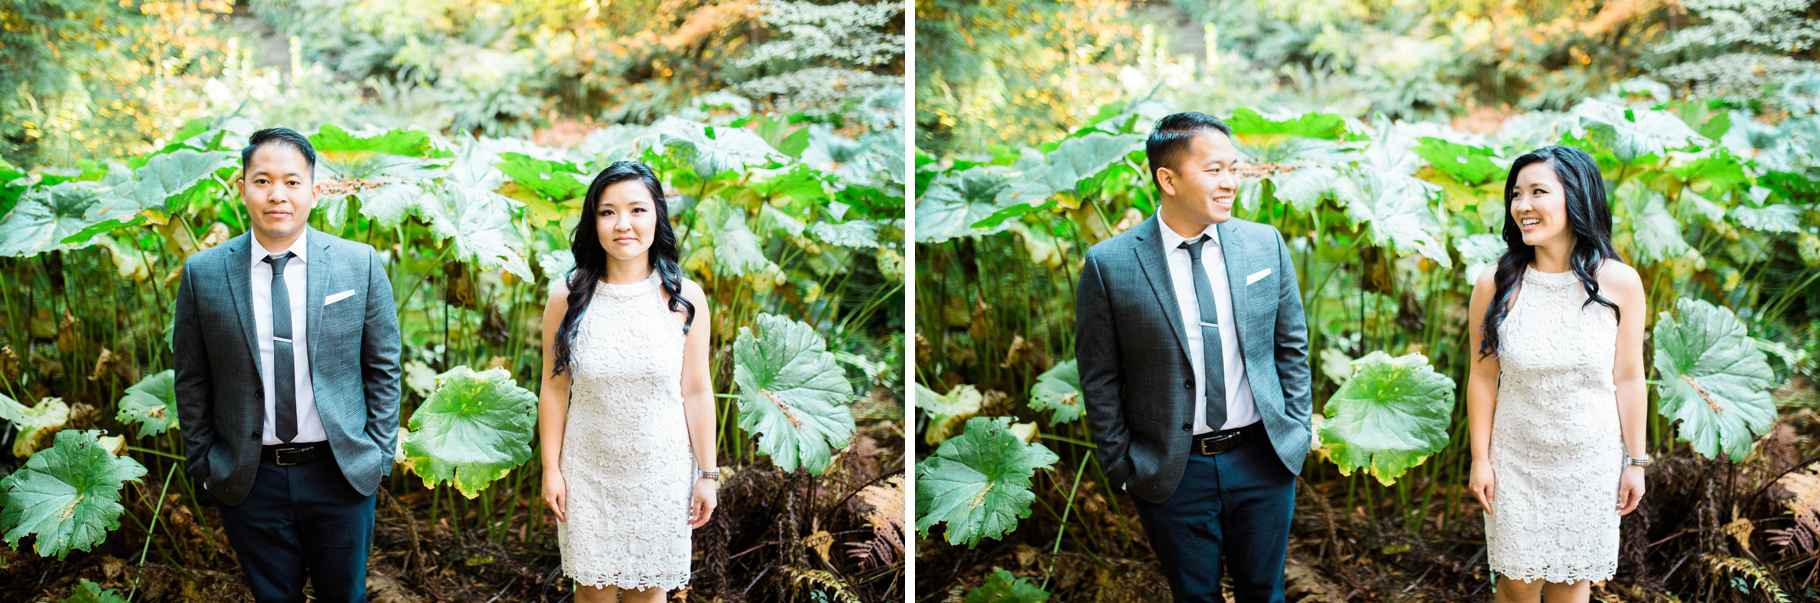 Washinton-Park-Arboretum-Engaged-Seattle-Wedding-Photographer_0015